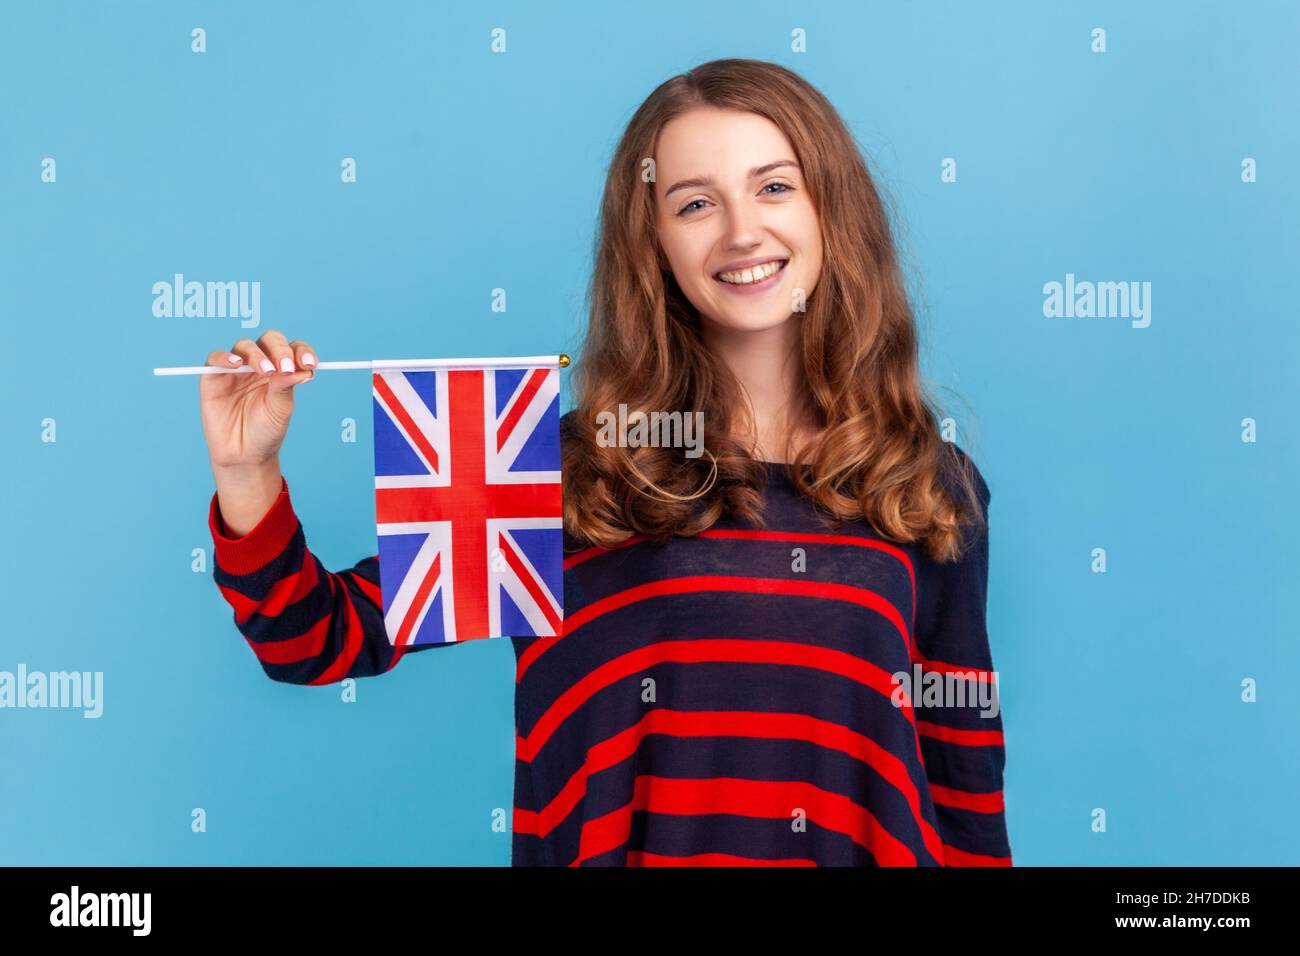 Atractiva mujer con suéter de estilo informal a rayas, que sostiene la bandera de una unidad constituyente del Reino Unido, celebrando el Día de la Independencia Británica estudio interior disparo aislado sobre fondo azul. Foto de stock